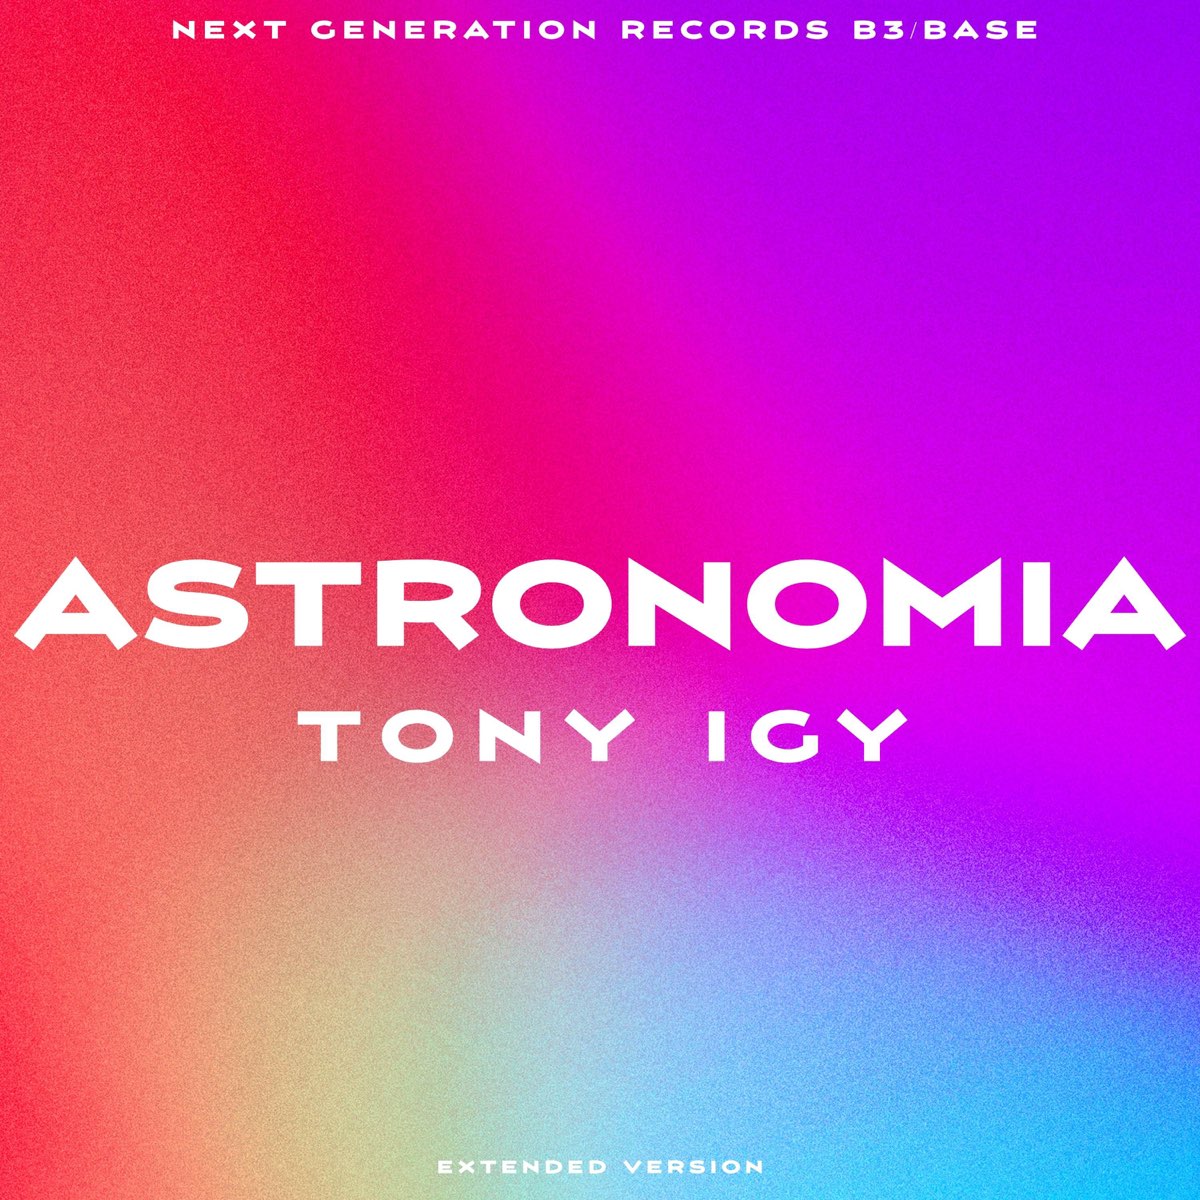 Tony igy Astronomia. DJ Tony igy. Vicetone Tony igy Astronomia 2014. Tony igy overcast.